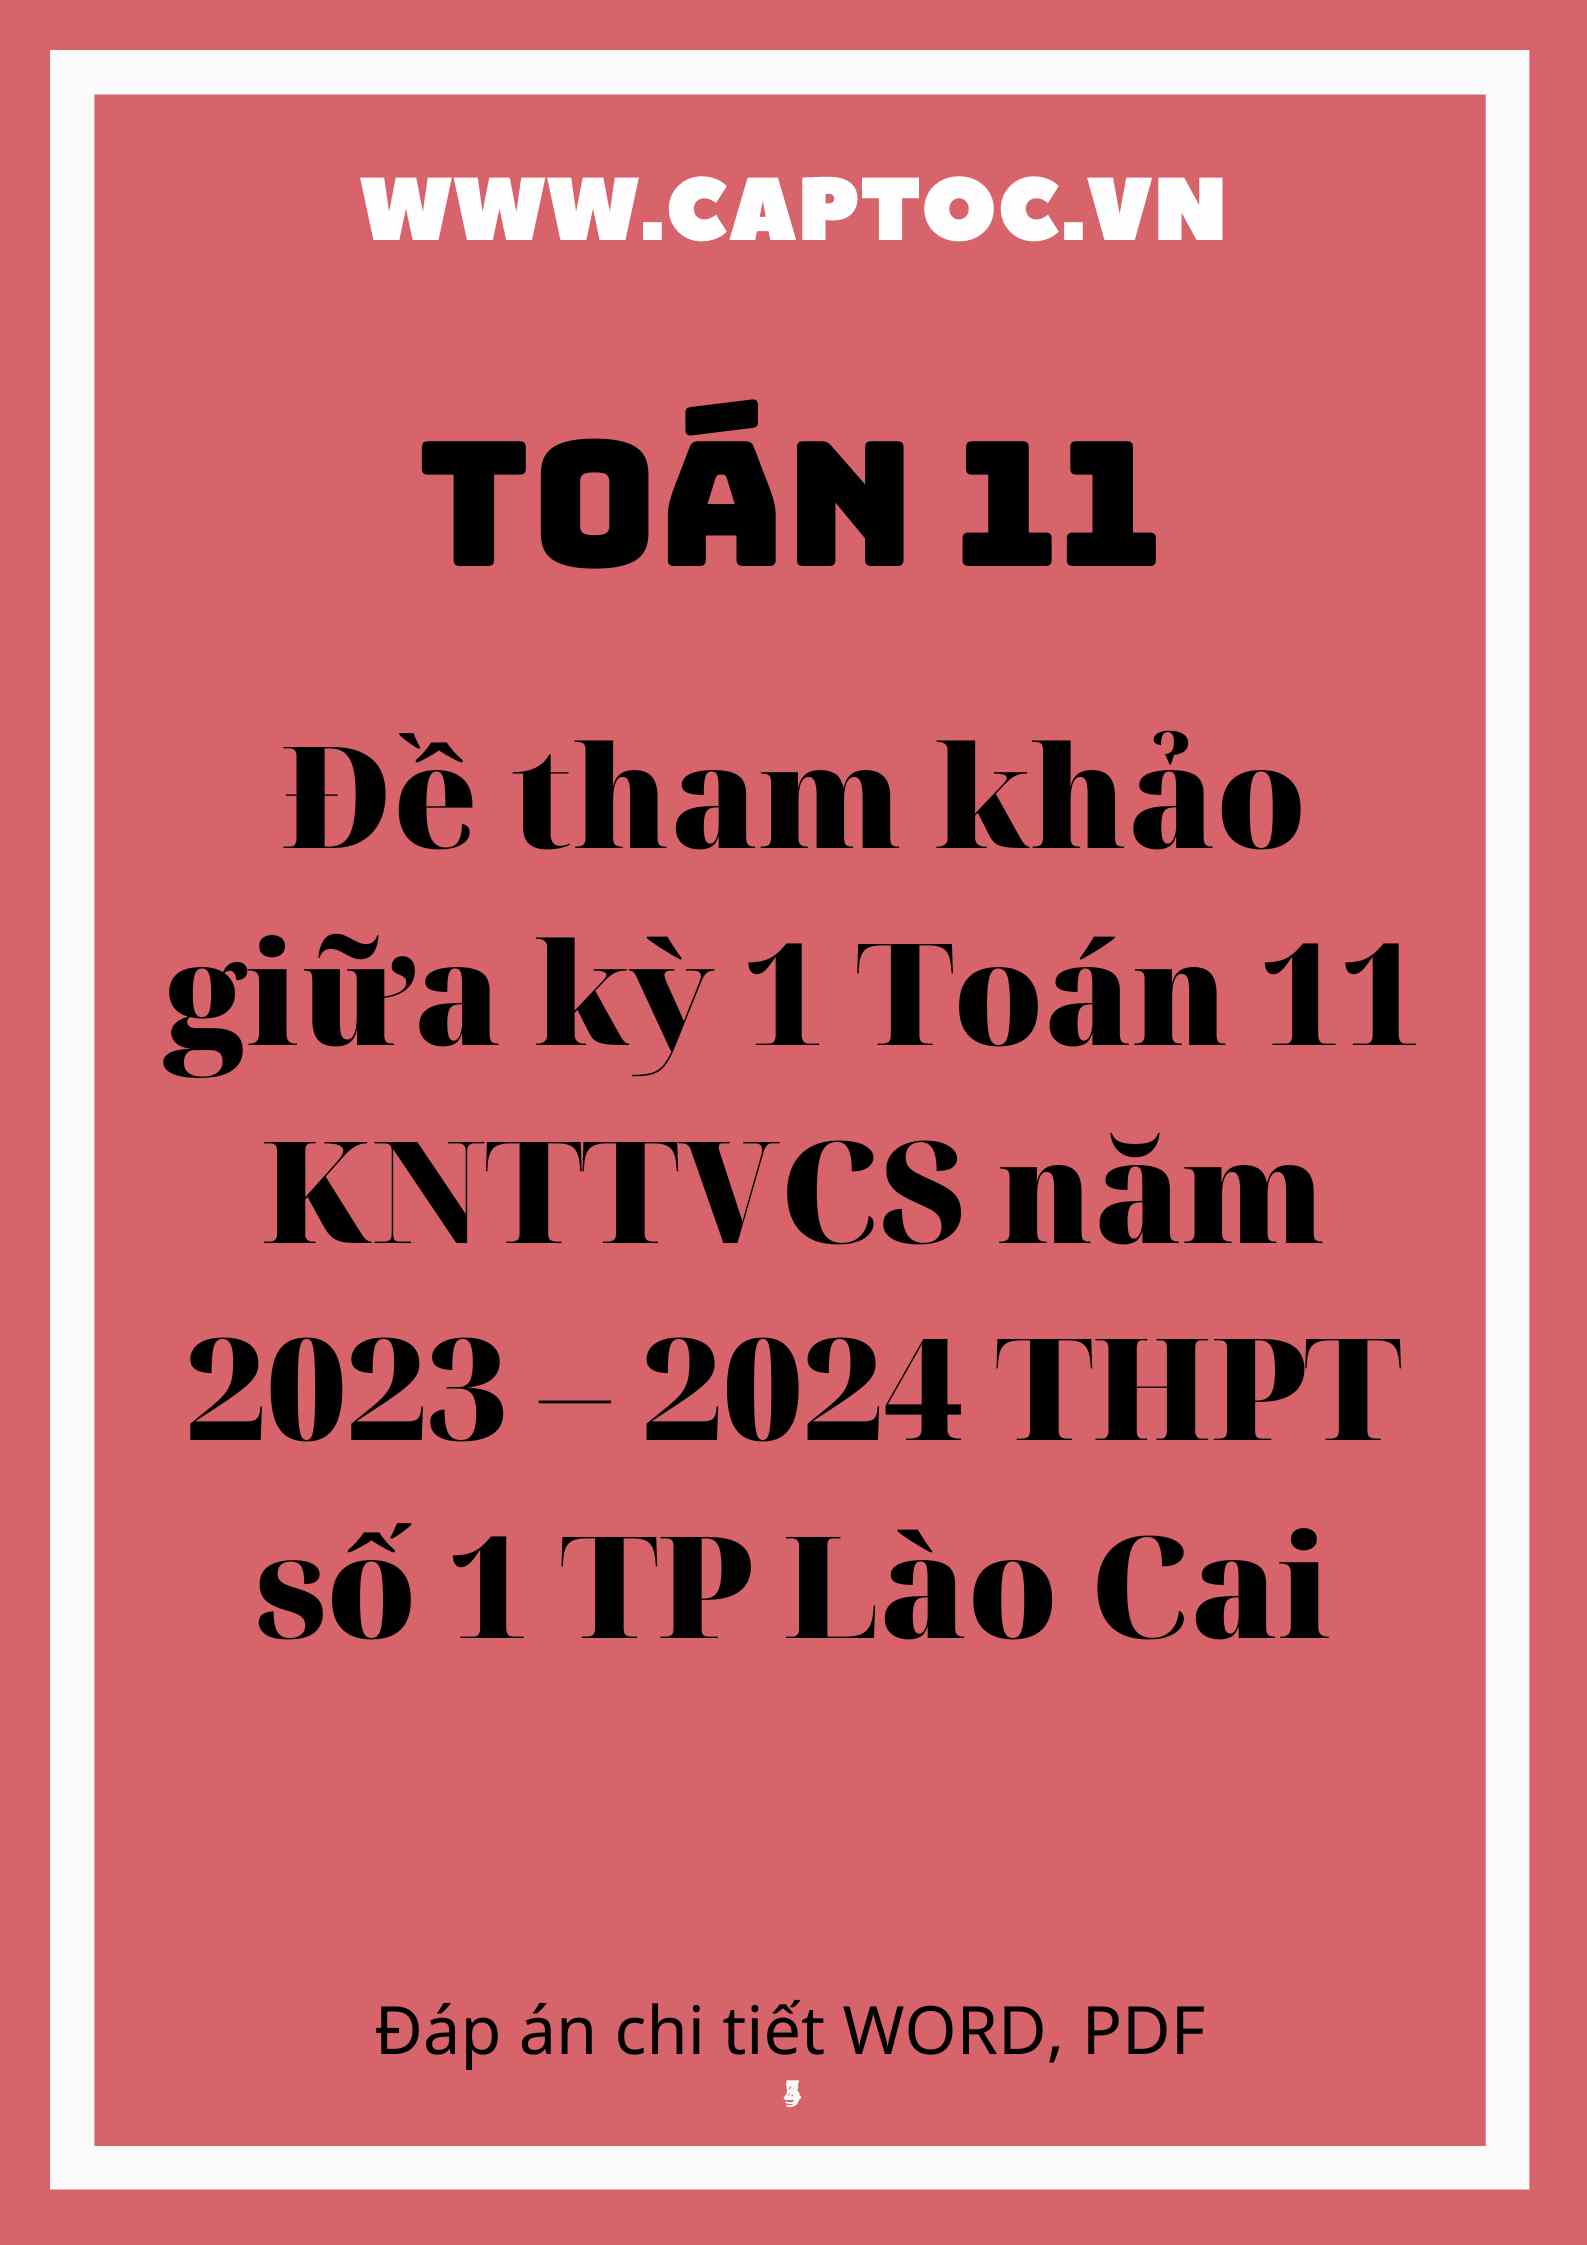 Đề tham khảo giữa kỳ 1 Toán 11 KNTTVCS năm 2023 – 2024 THPT số 1 TP Lào Cai